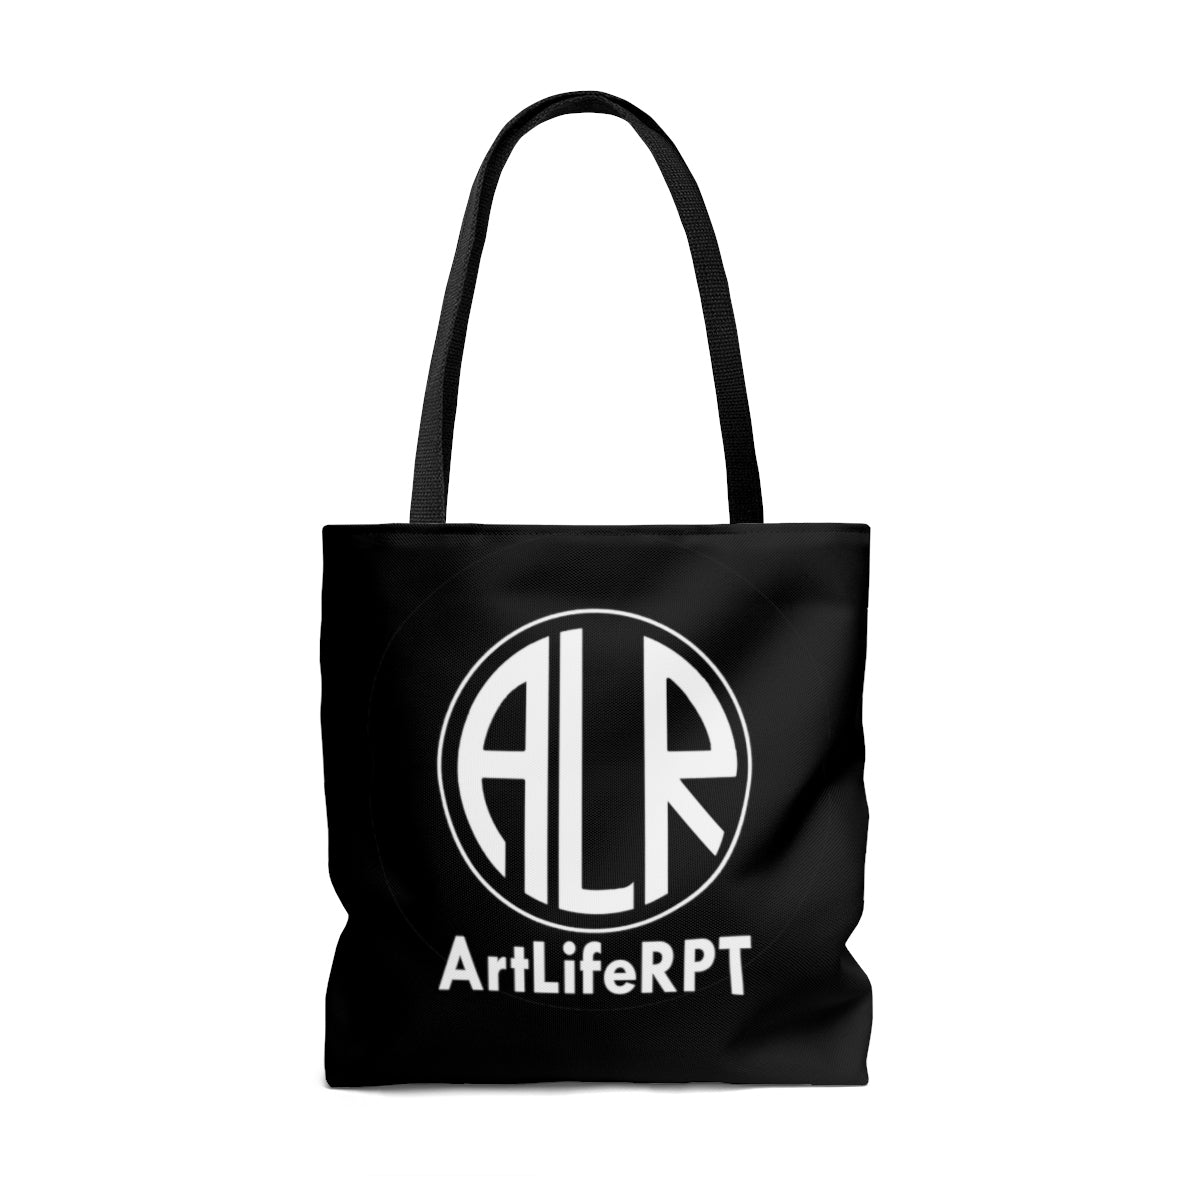 The ArtLifeRPT Tote Bag